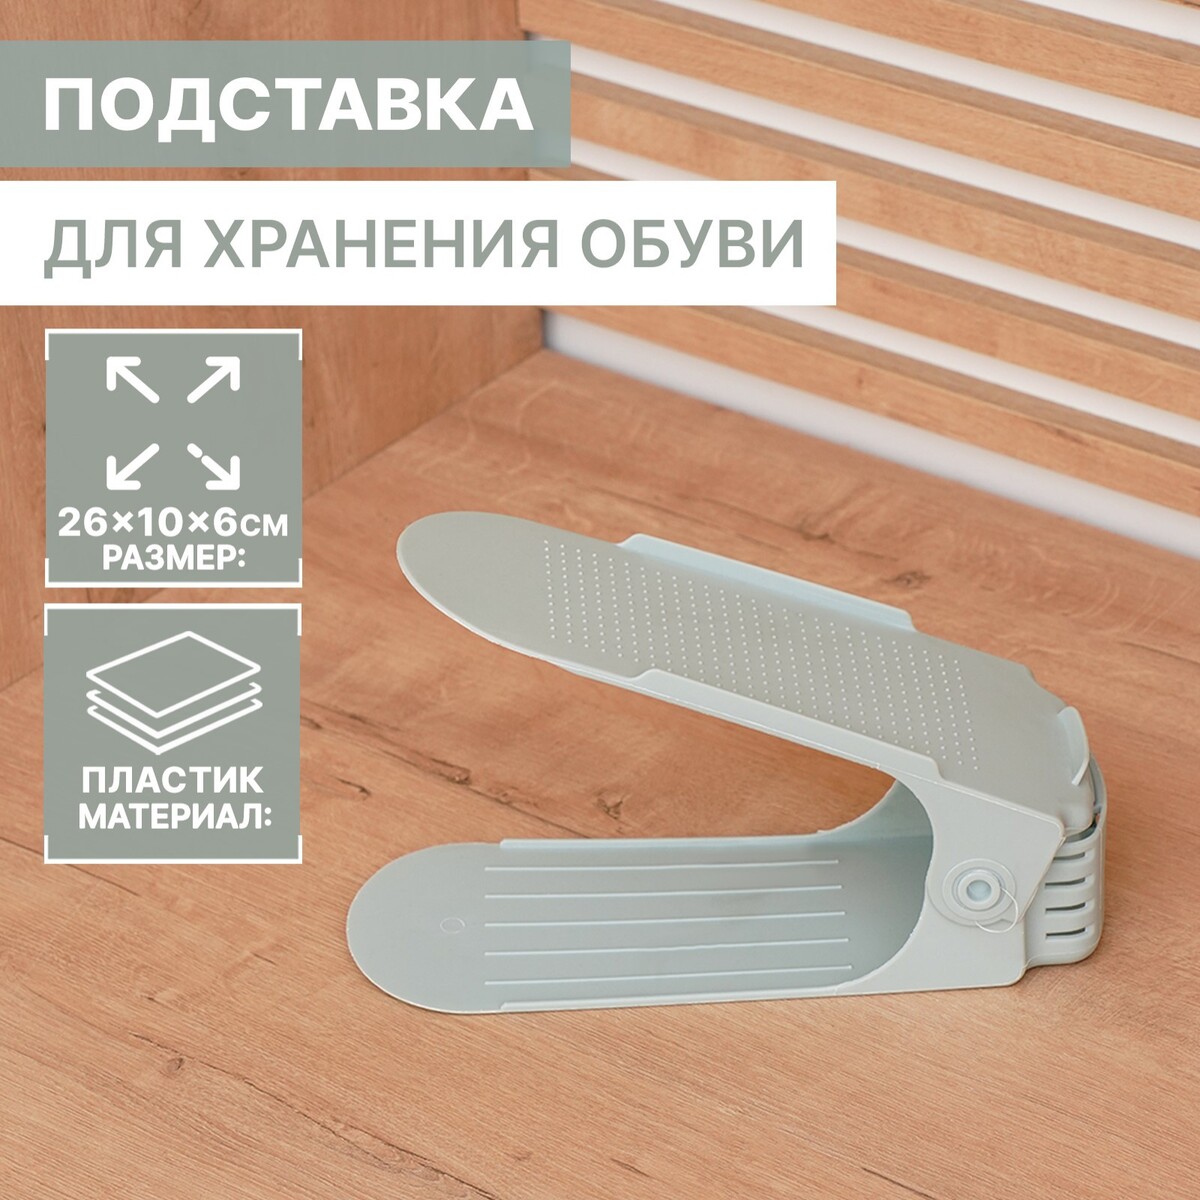 Подставка для хранения обуви регулируемая, 26×10×6 см, цвет голубой подставка для обуви 3 полки 81×32 5×48 5 см